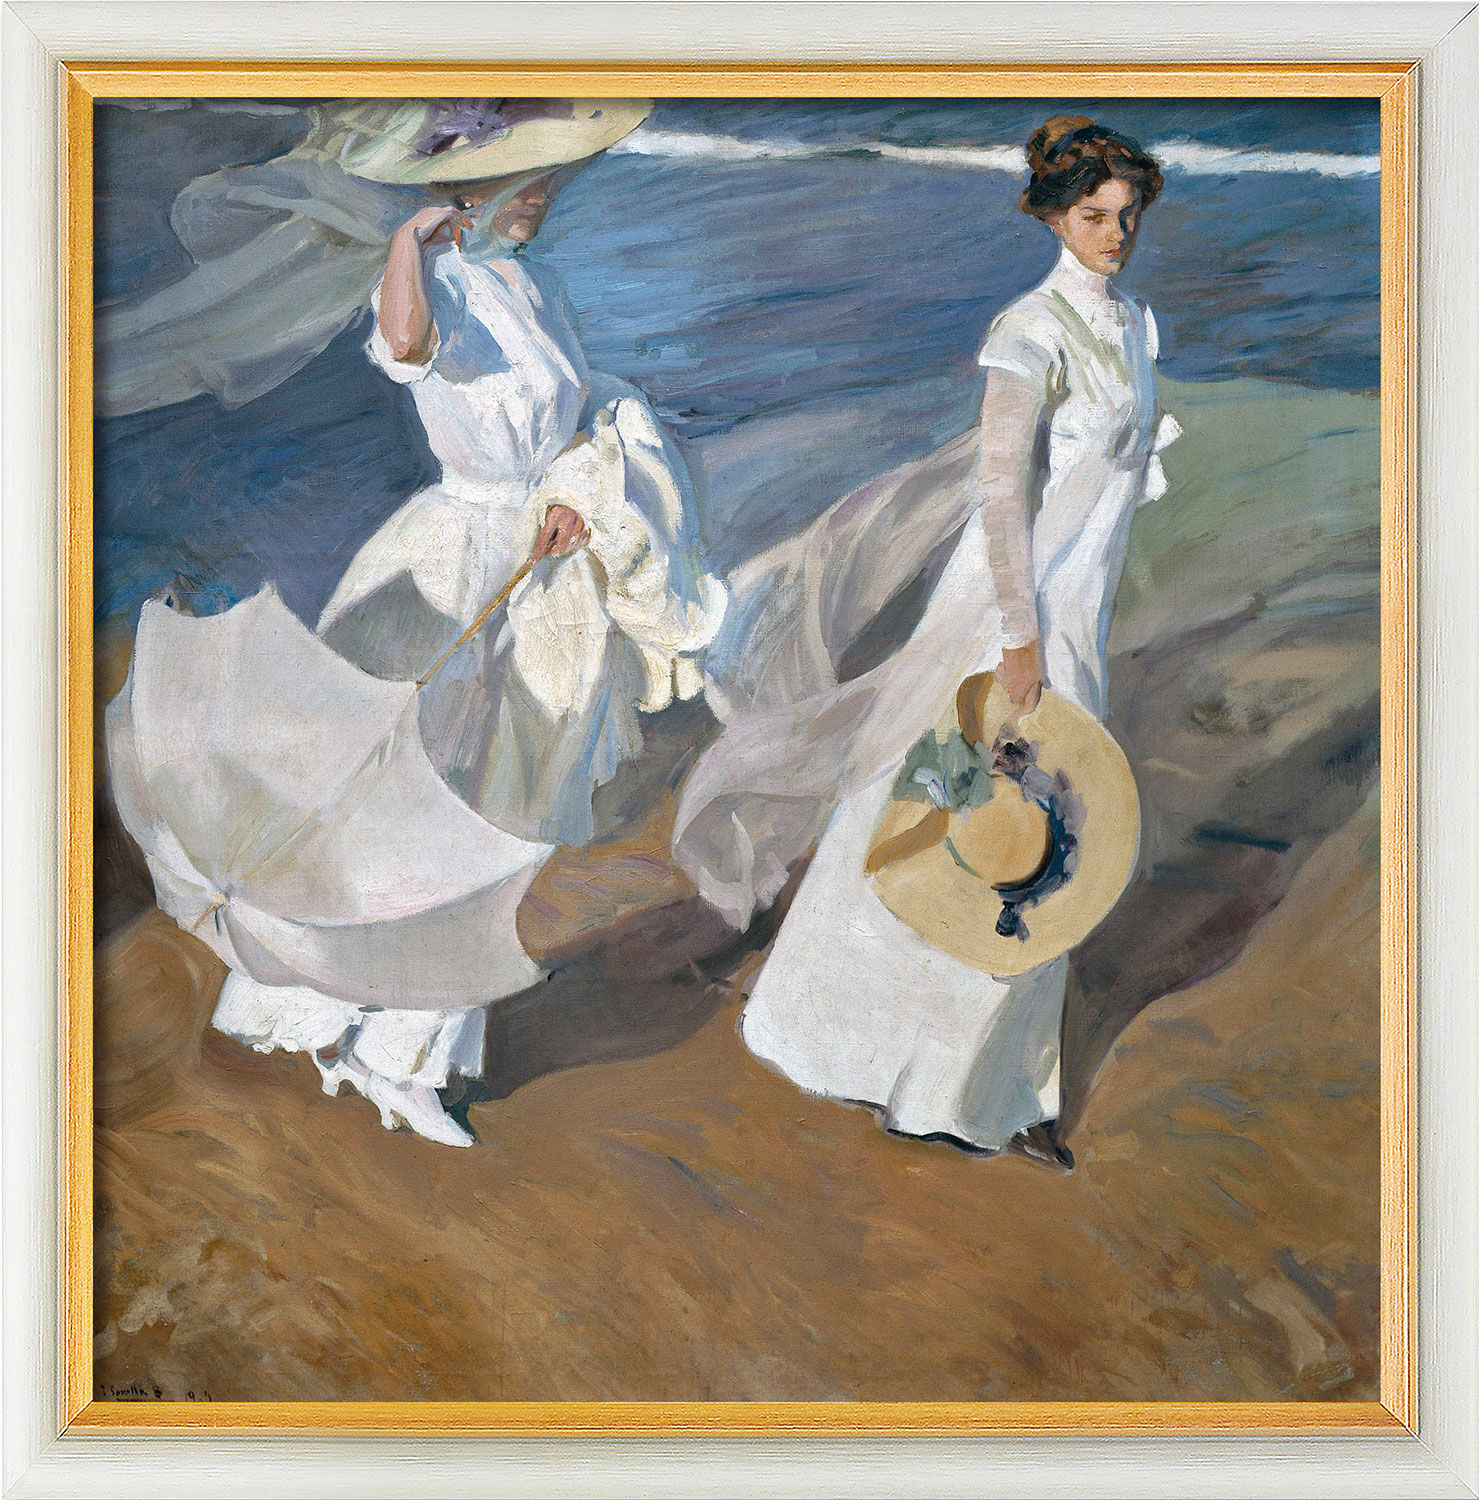 Tableau "Promenade sur la plage" (1909), version encadrée blanc et or von Joaquín Sorolla y Bastida